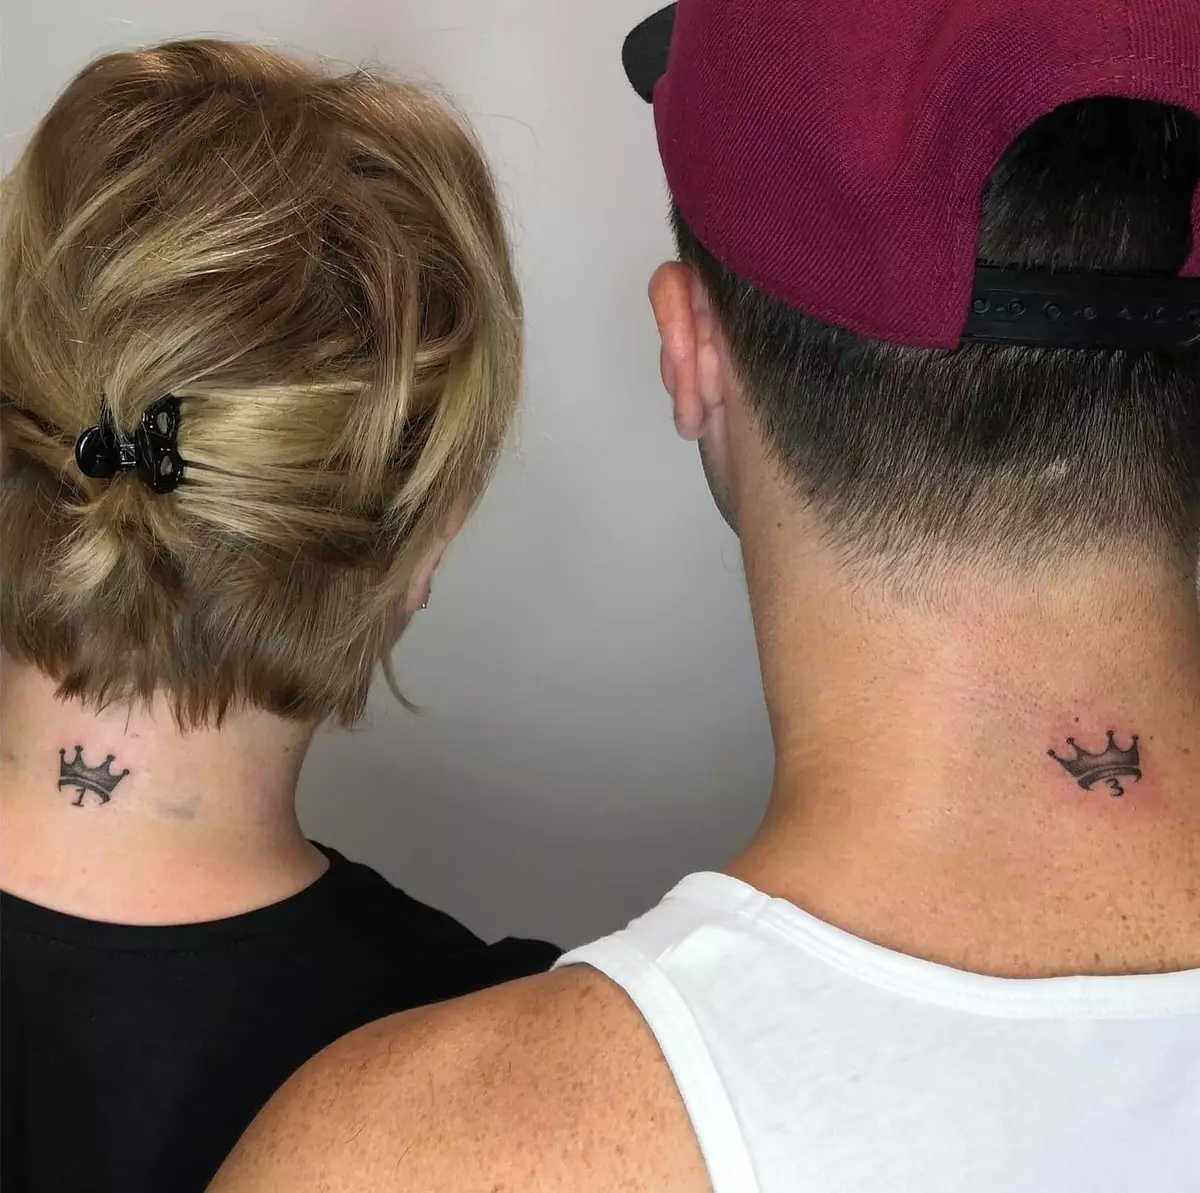 Ζευγάρι τατουάζ για τους λάτρεις (67 φωτογραφίες): Ιδέες των κοινά μικρά τατουάζ για έναν τύπο και τα κορίτσια, το νόημα, τα σκίτσα και τις επιγραφές τους 14256_59